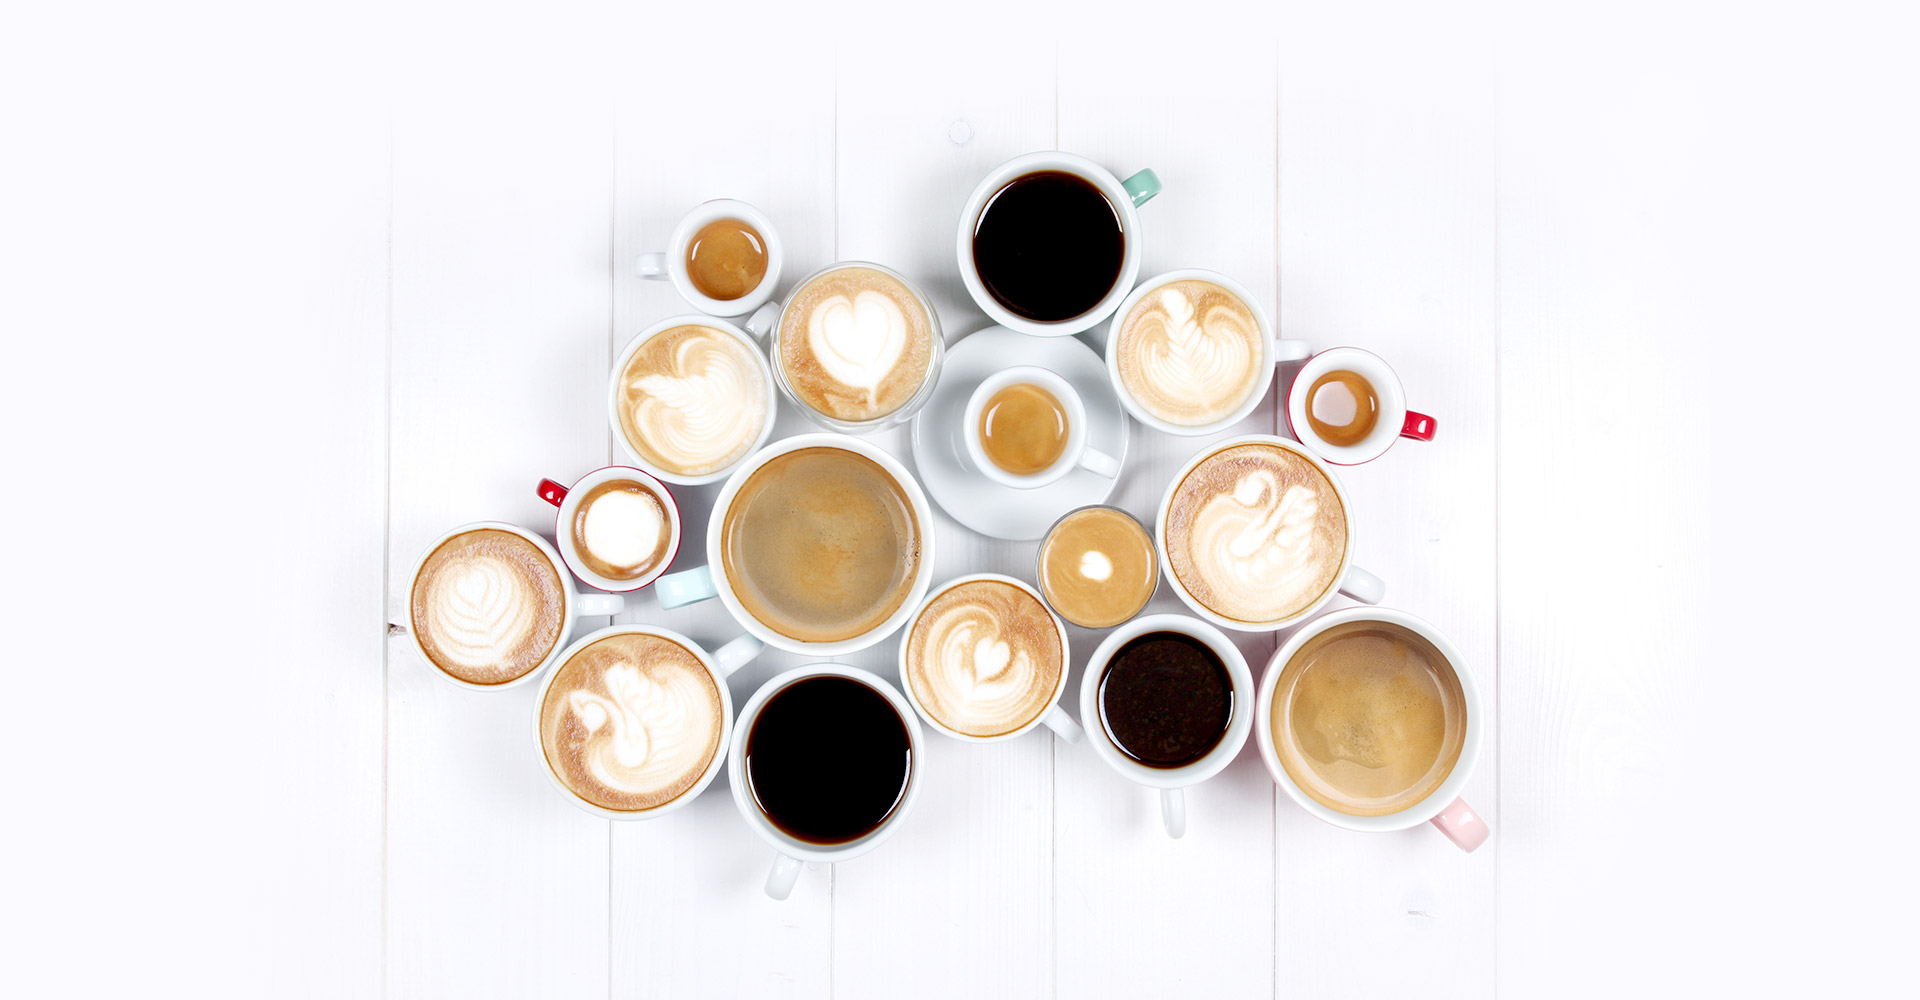 Kaffeespezialitäten von Filterkaffee über Caffè Crema bis hin zum Cappuccino